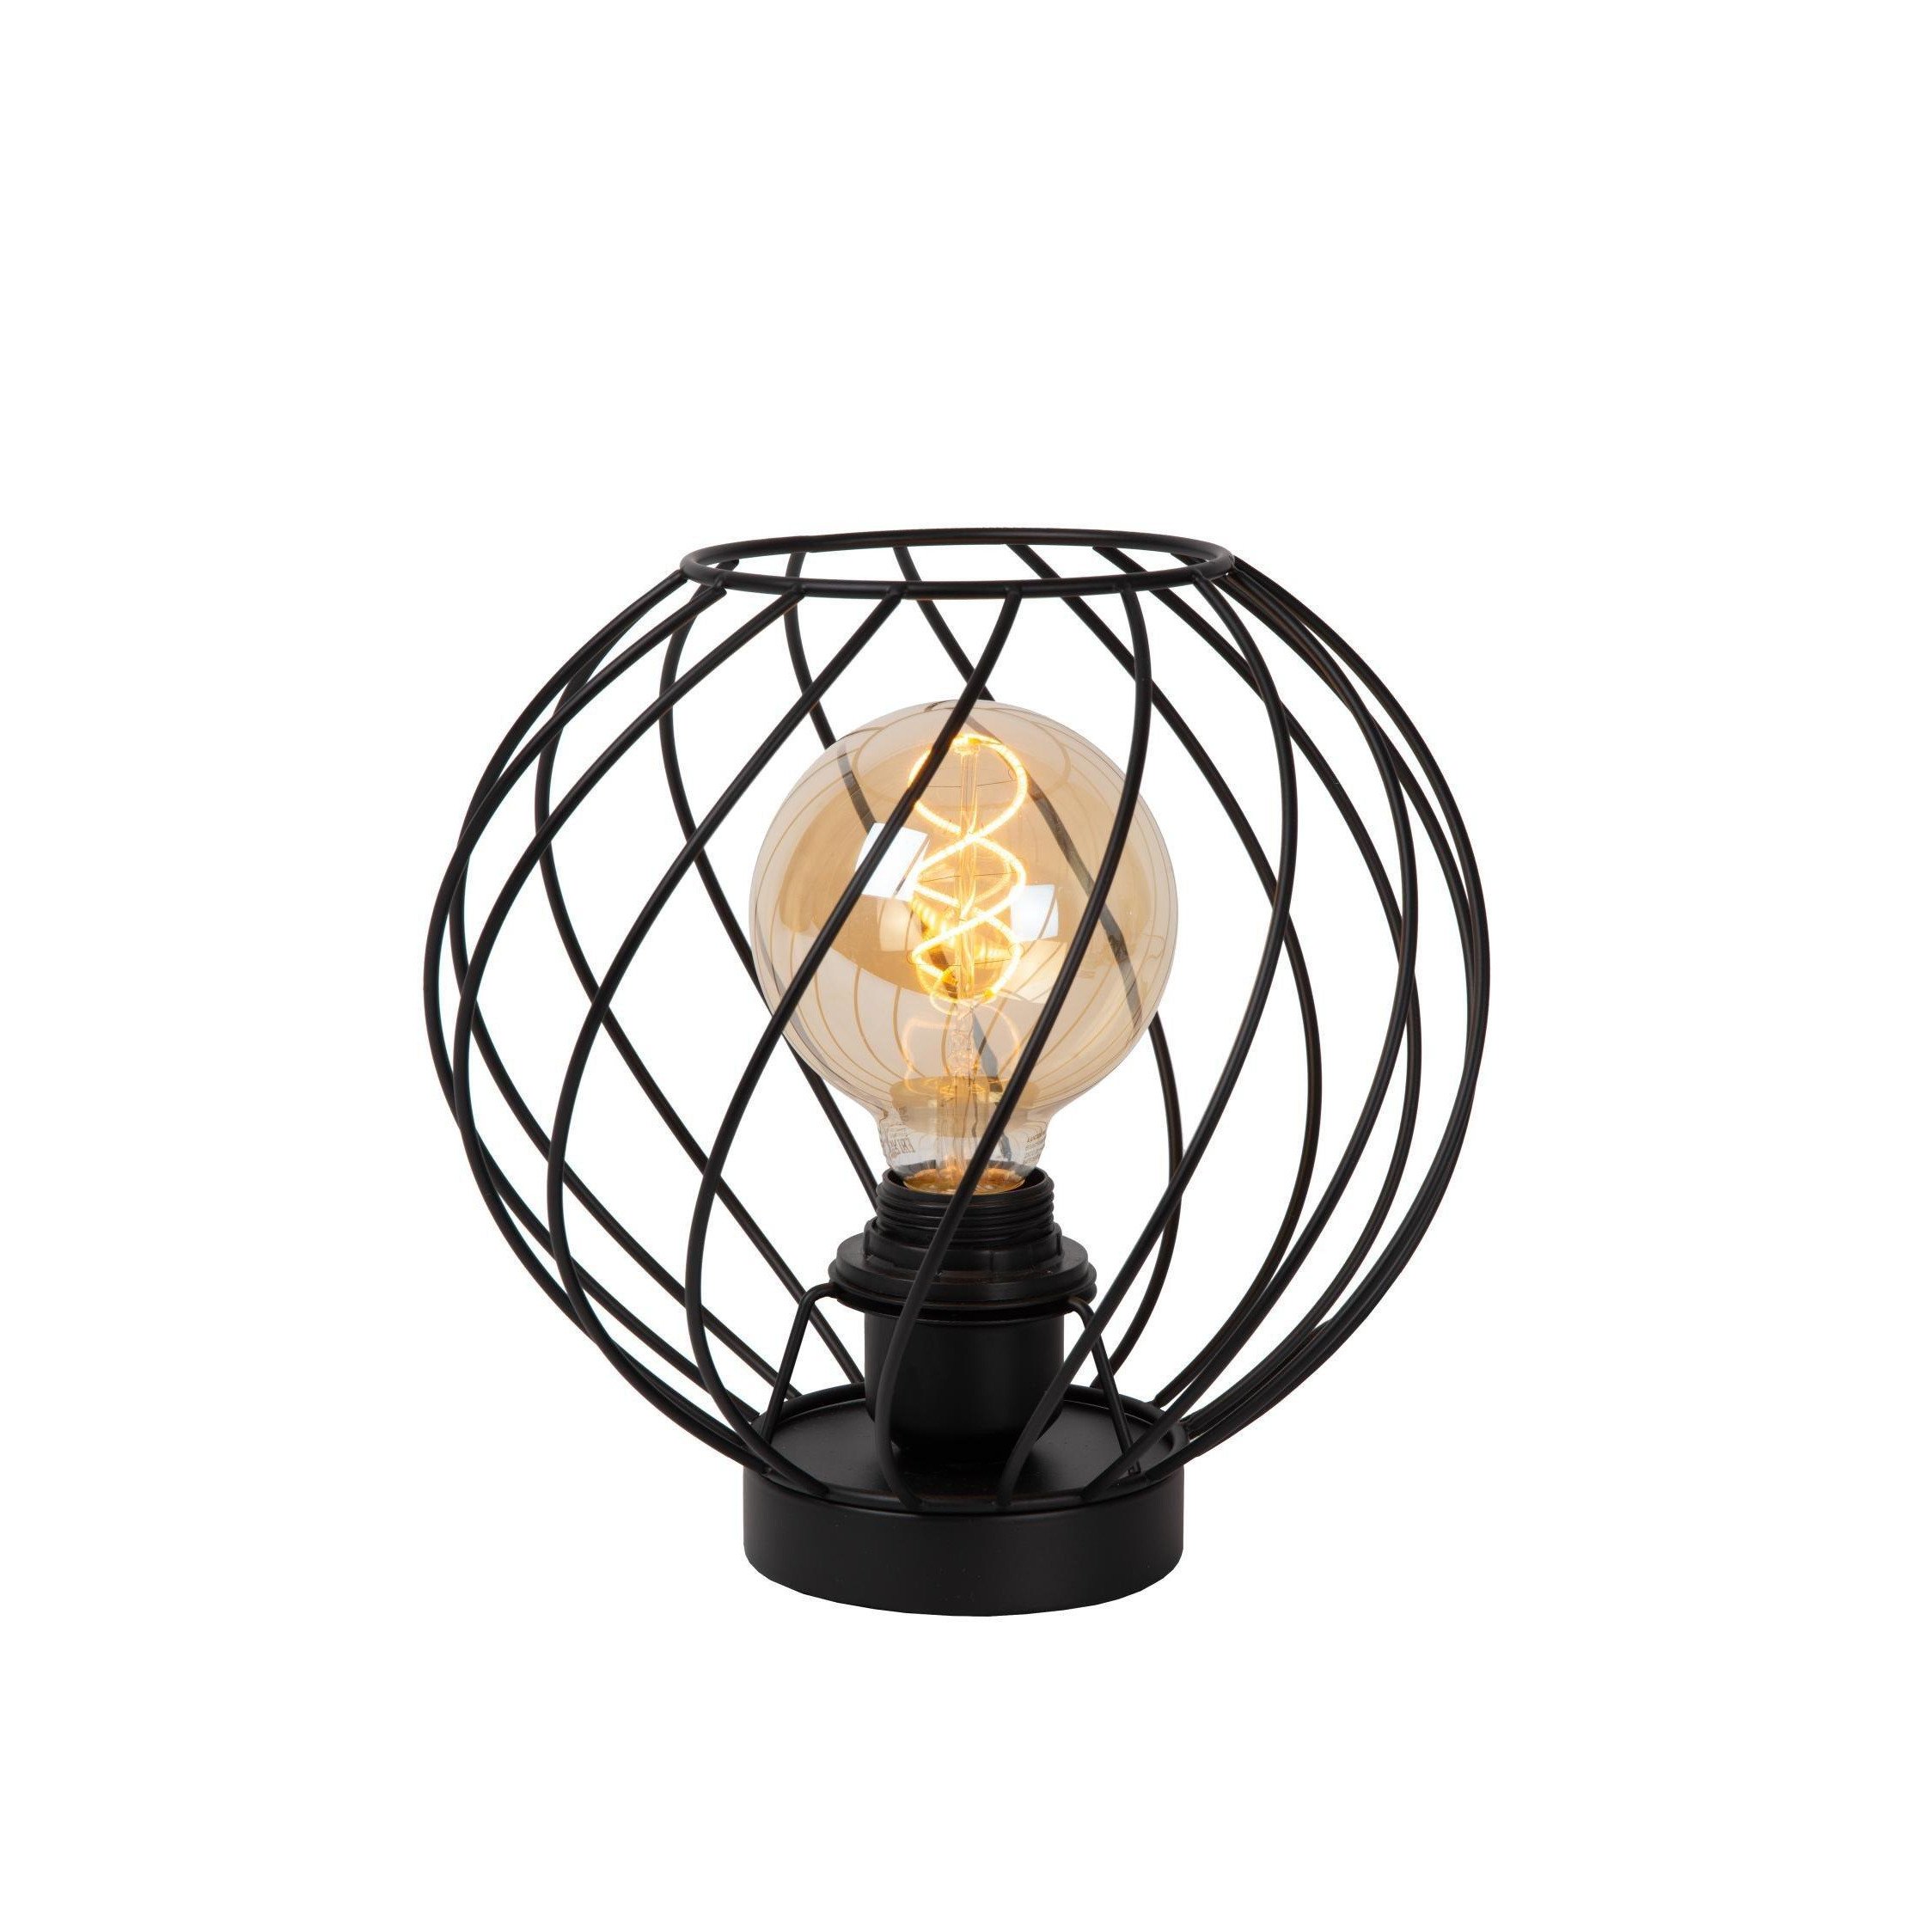 Lucide DANZA Table Lamp E27 Globe Shape 40W Classic Desk Night Light - 25 cm - image 1